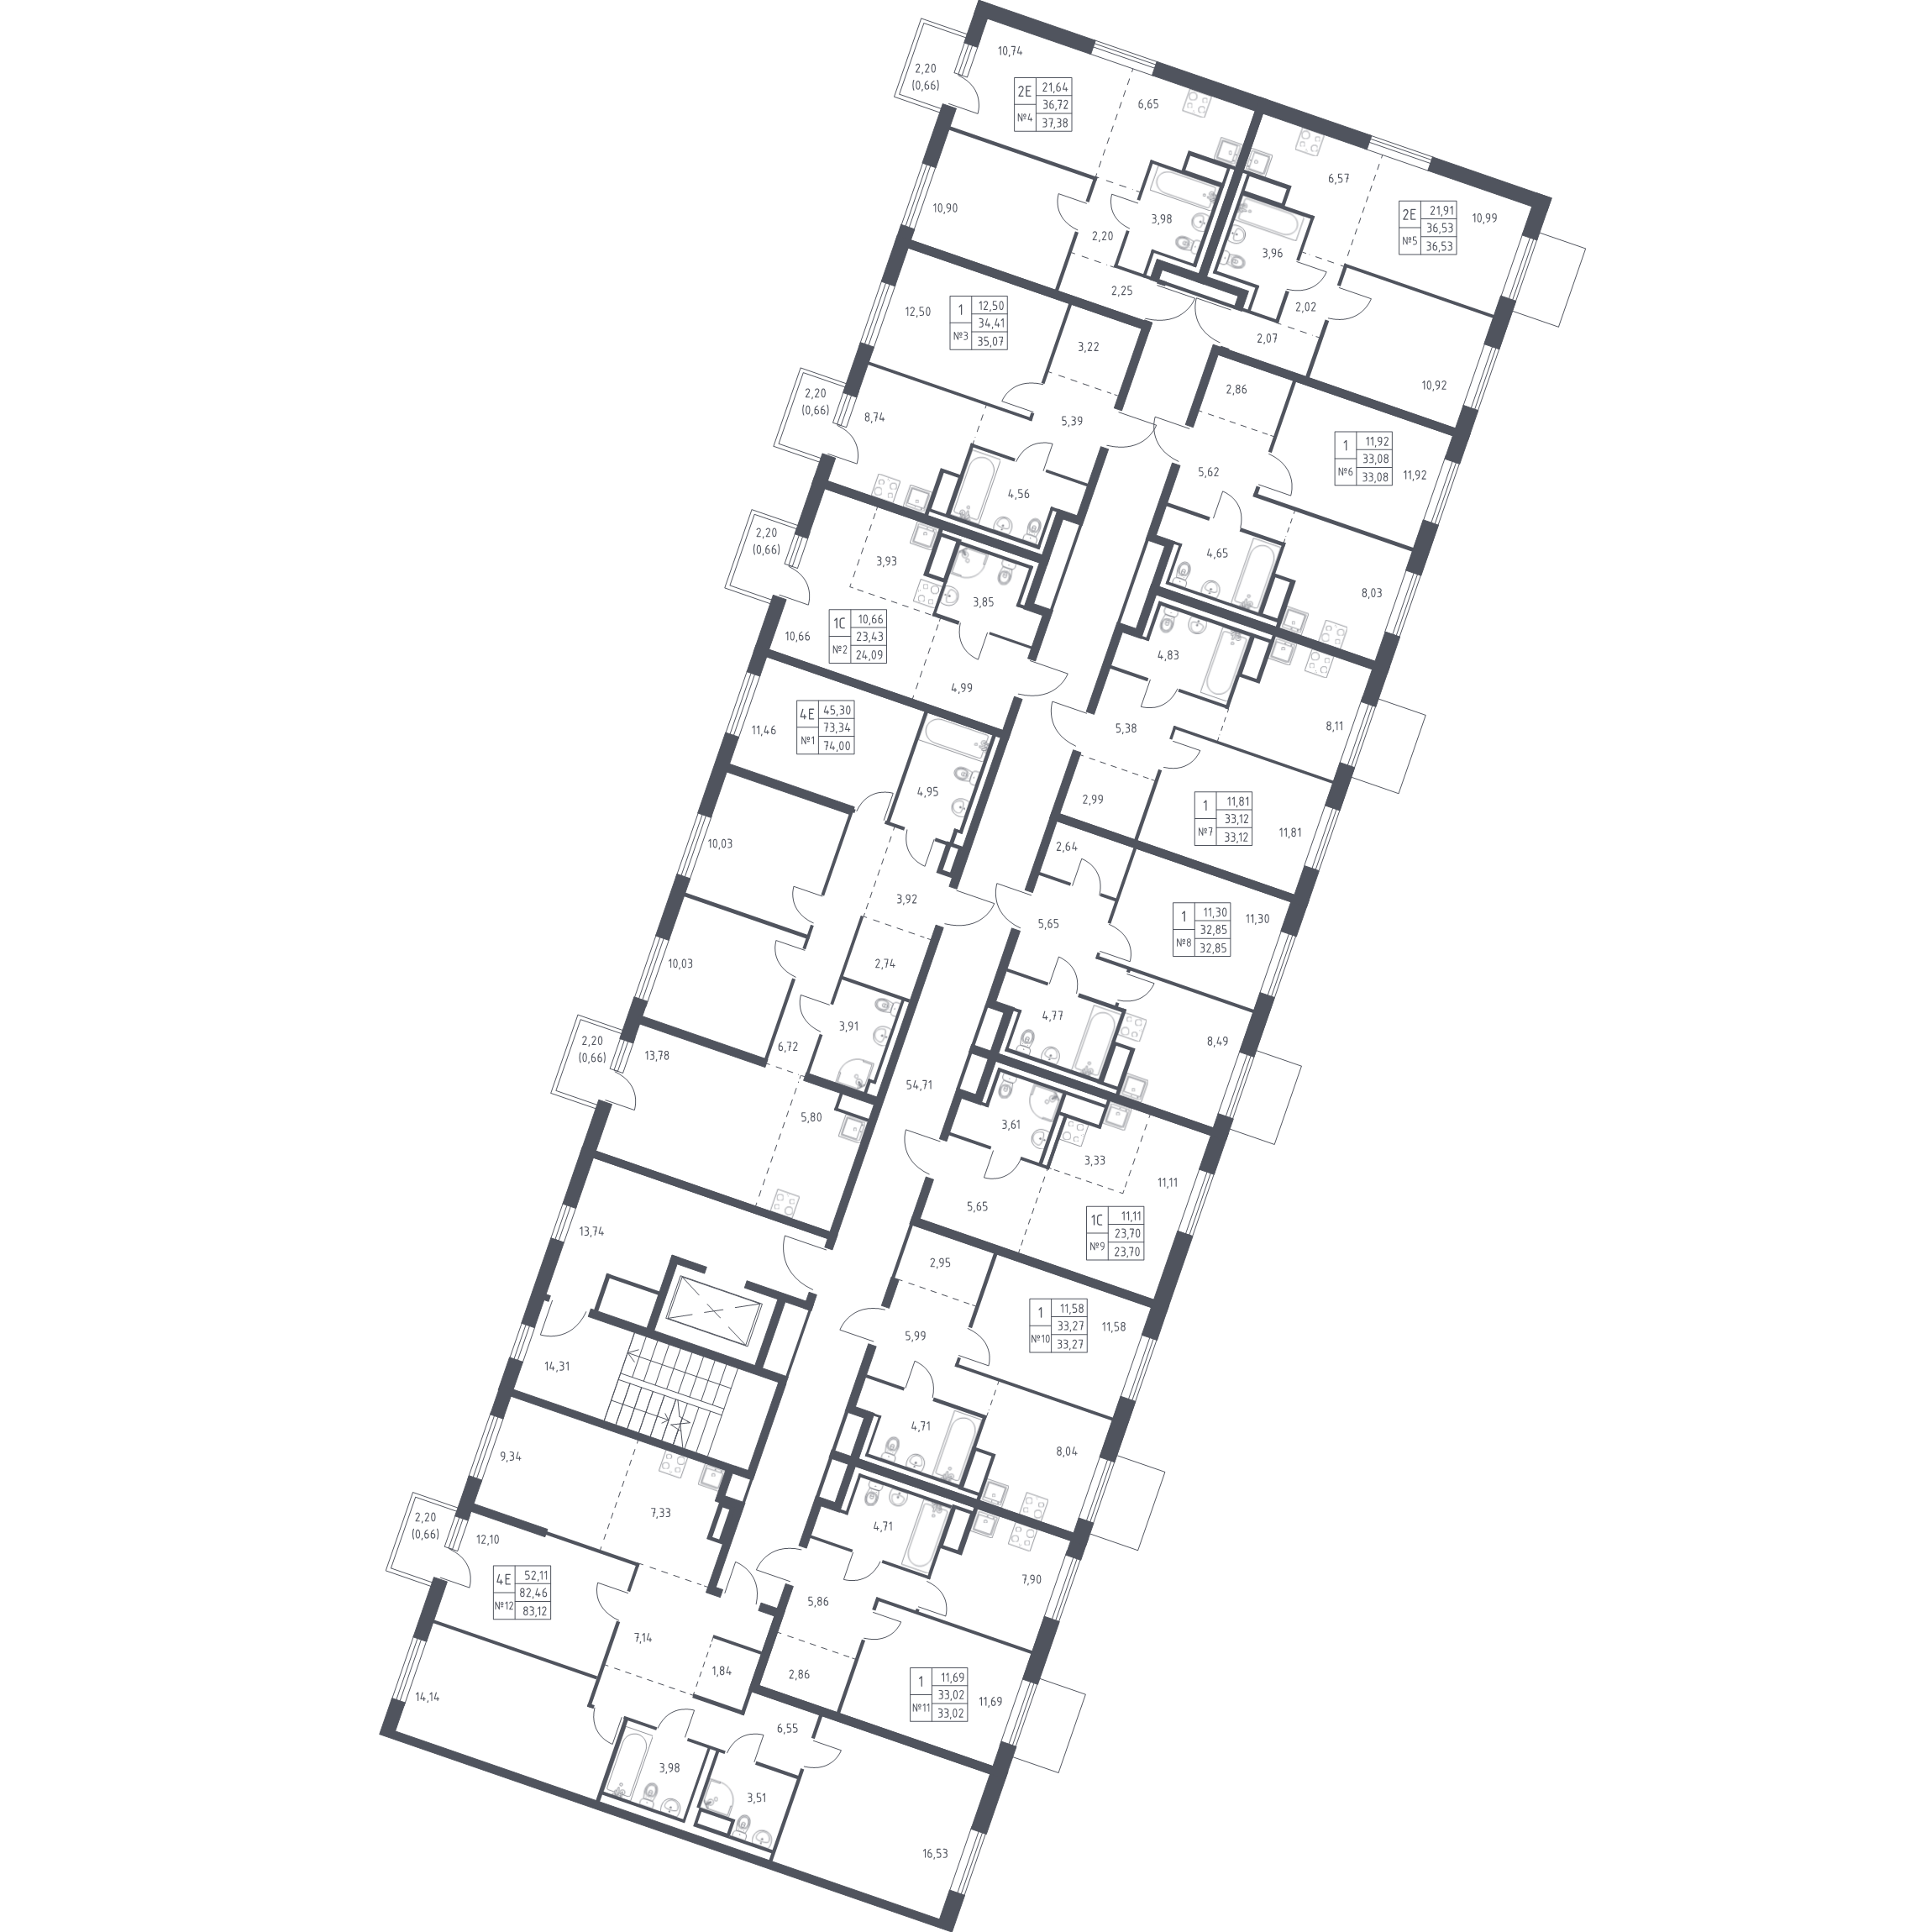 1-комнатная квартира, 33.27 м² - планировка этажа